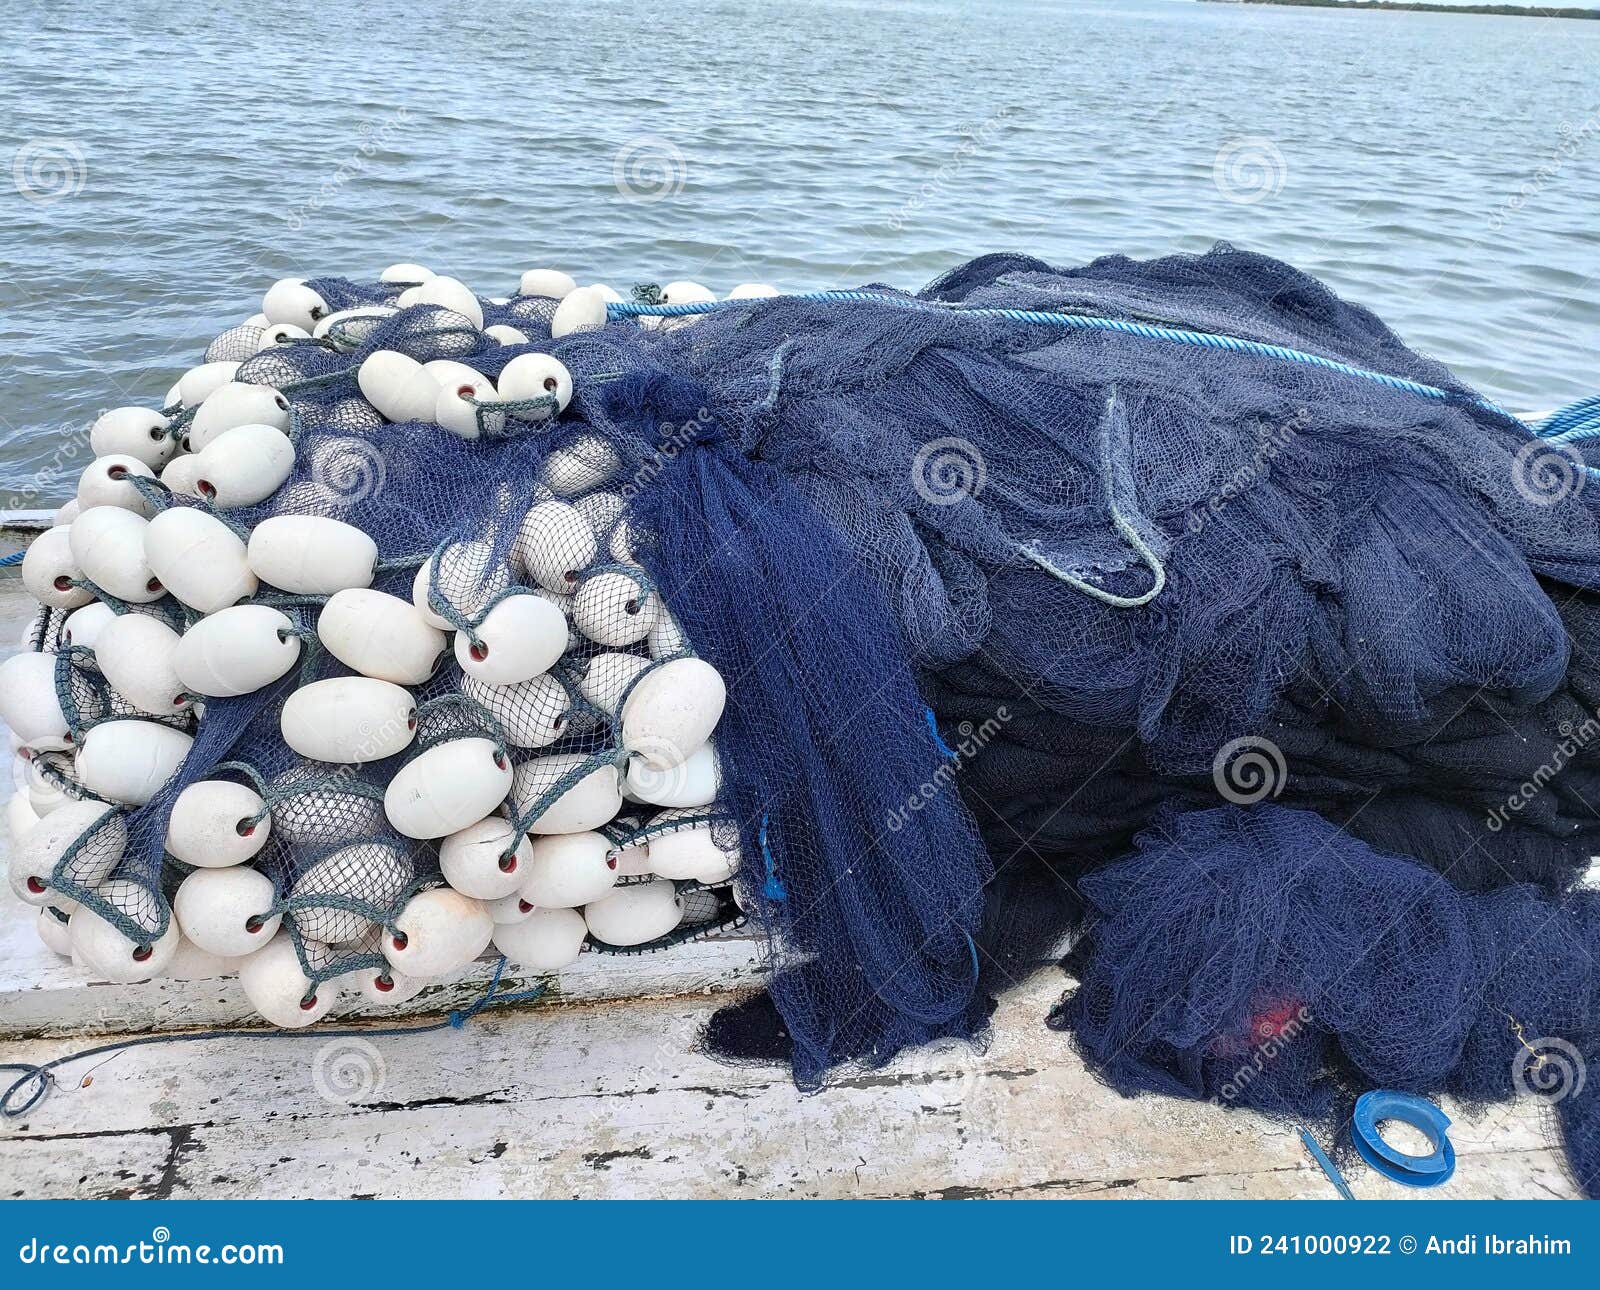 Fishing boat burns in Marshall Islands lagoon | RNZ News